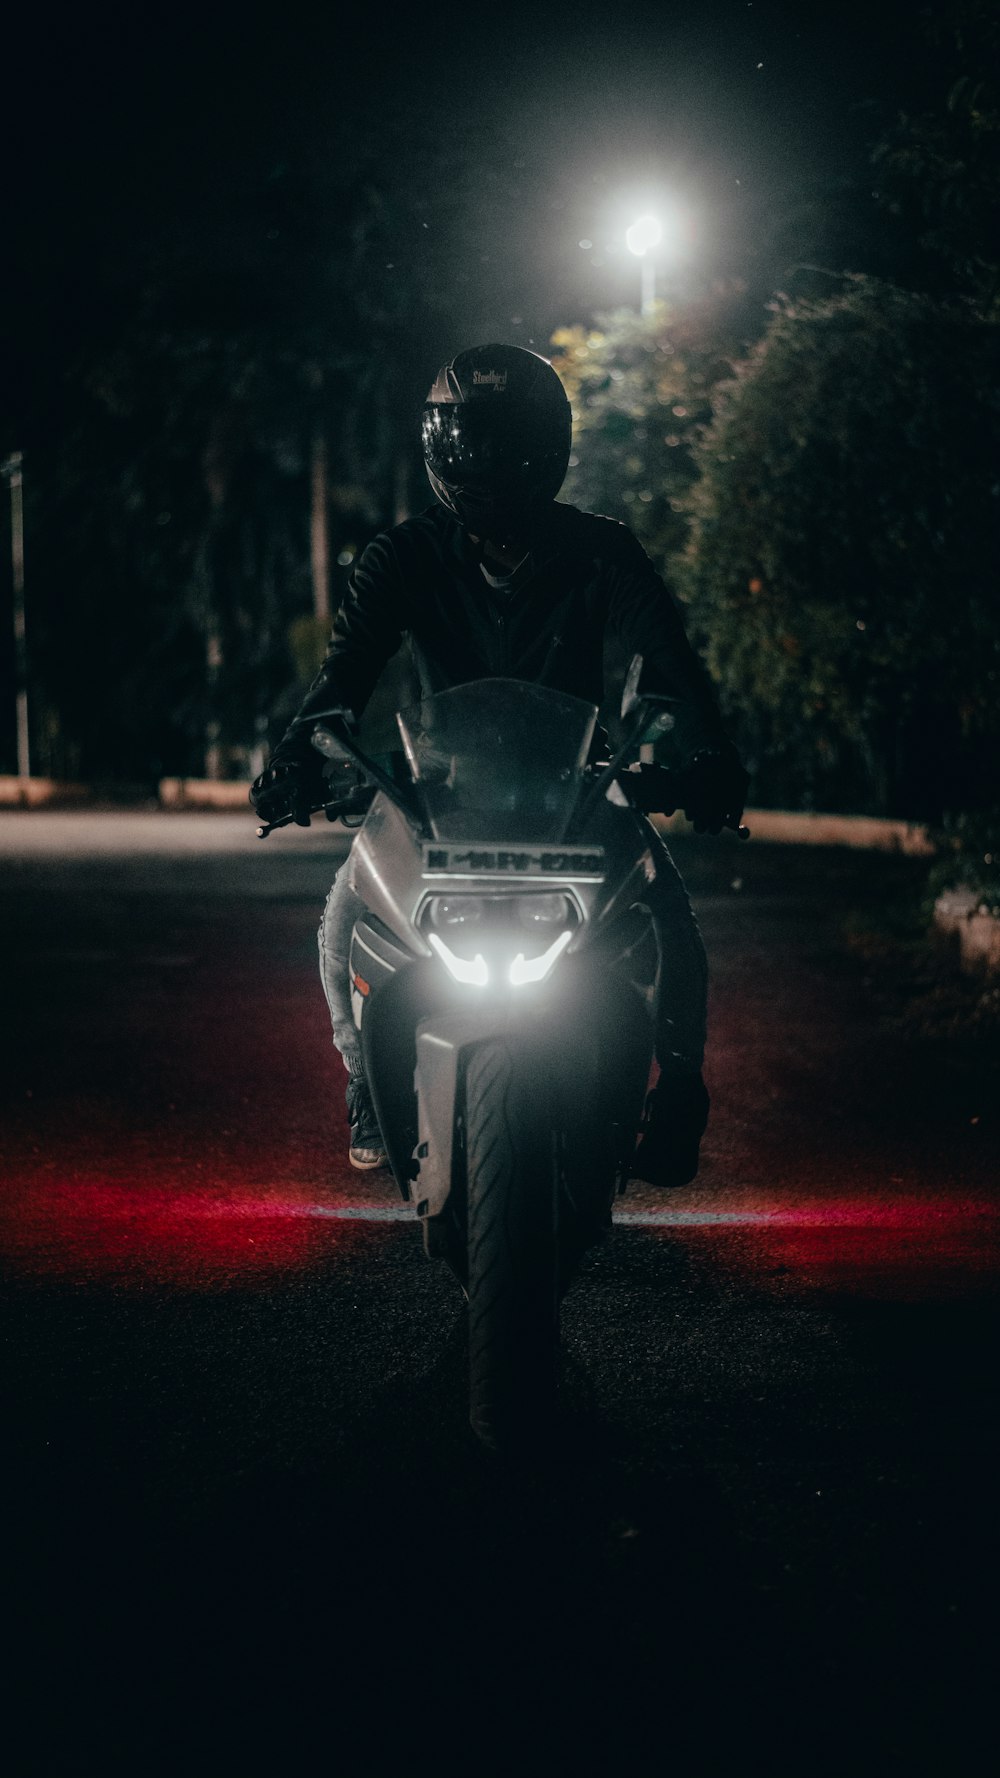 homme en veste noire à moto pendant la nuit